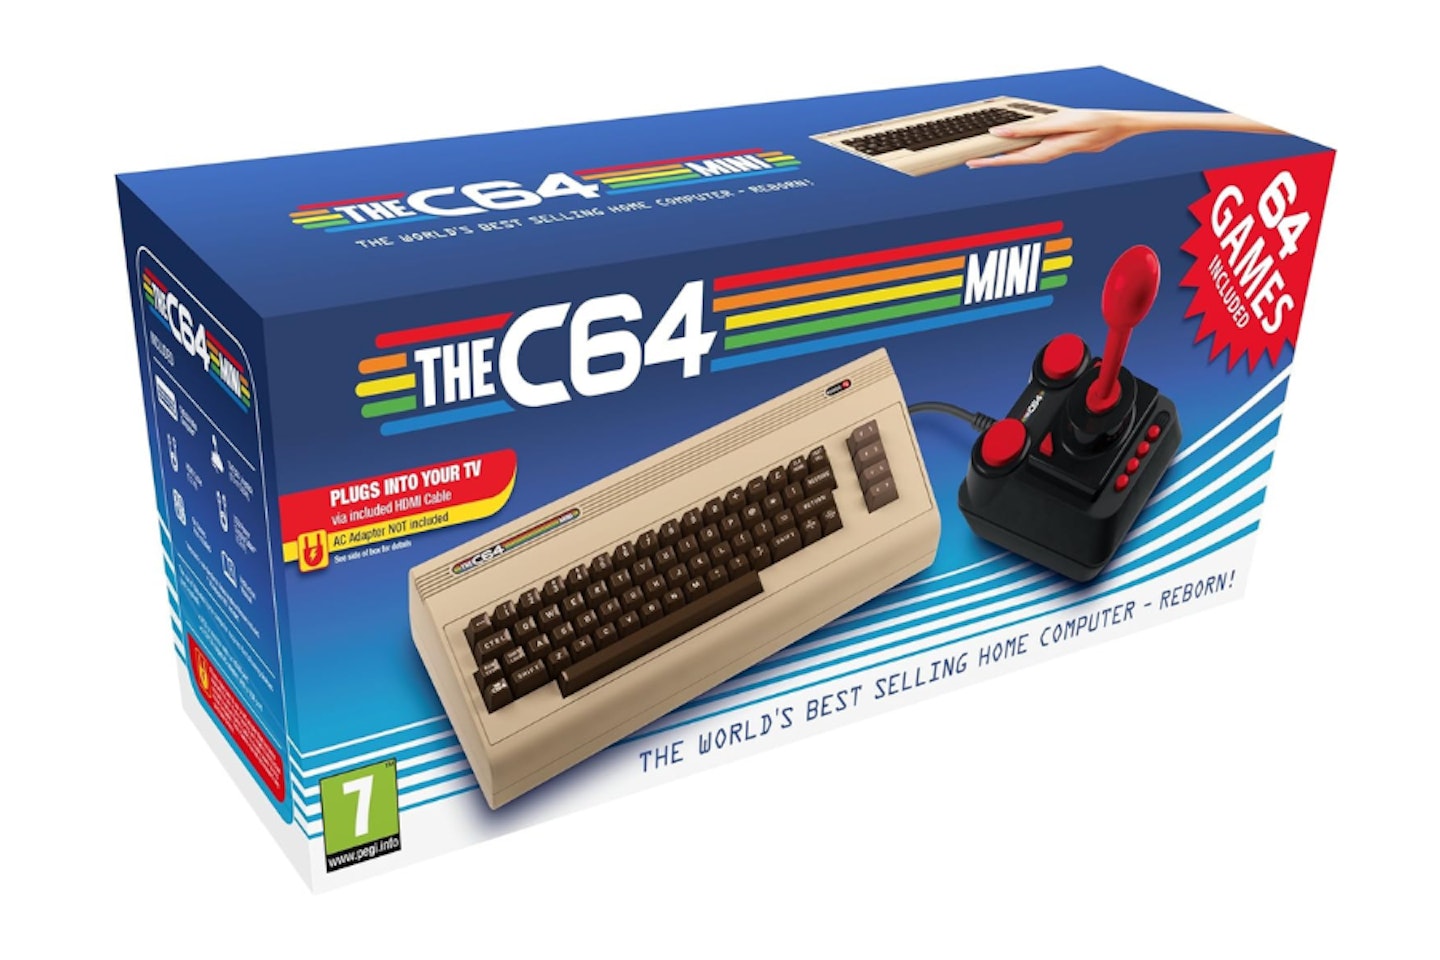 TheC64 Mini (Commodore 64)  - one of the best mini consoles